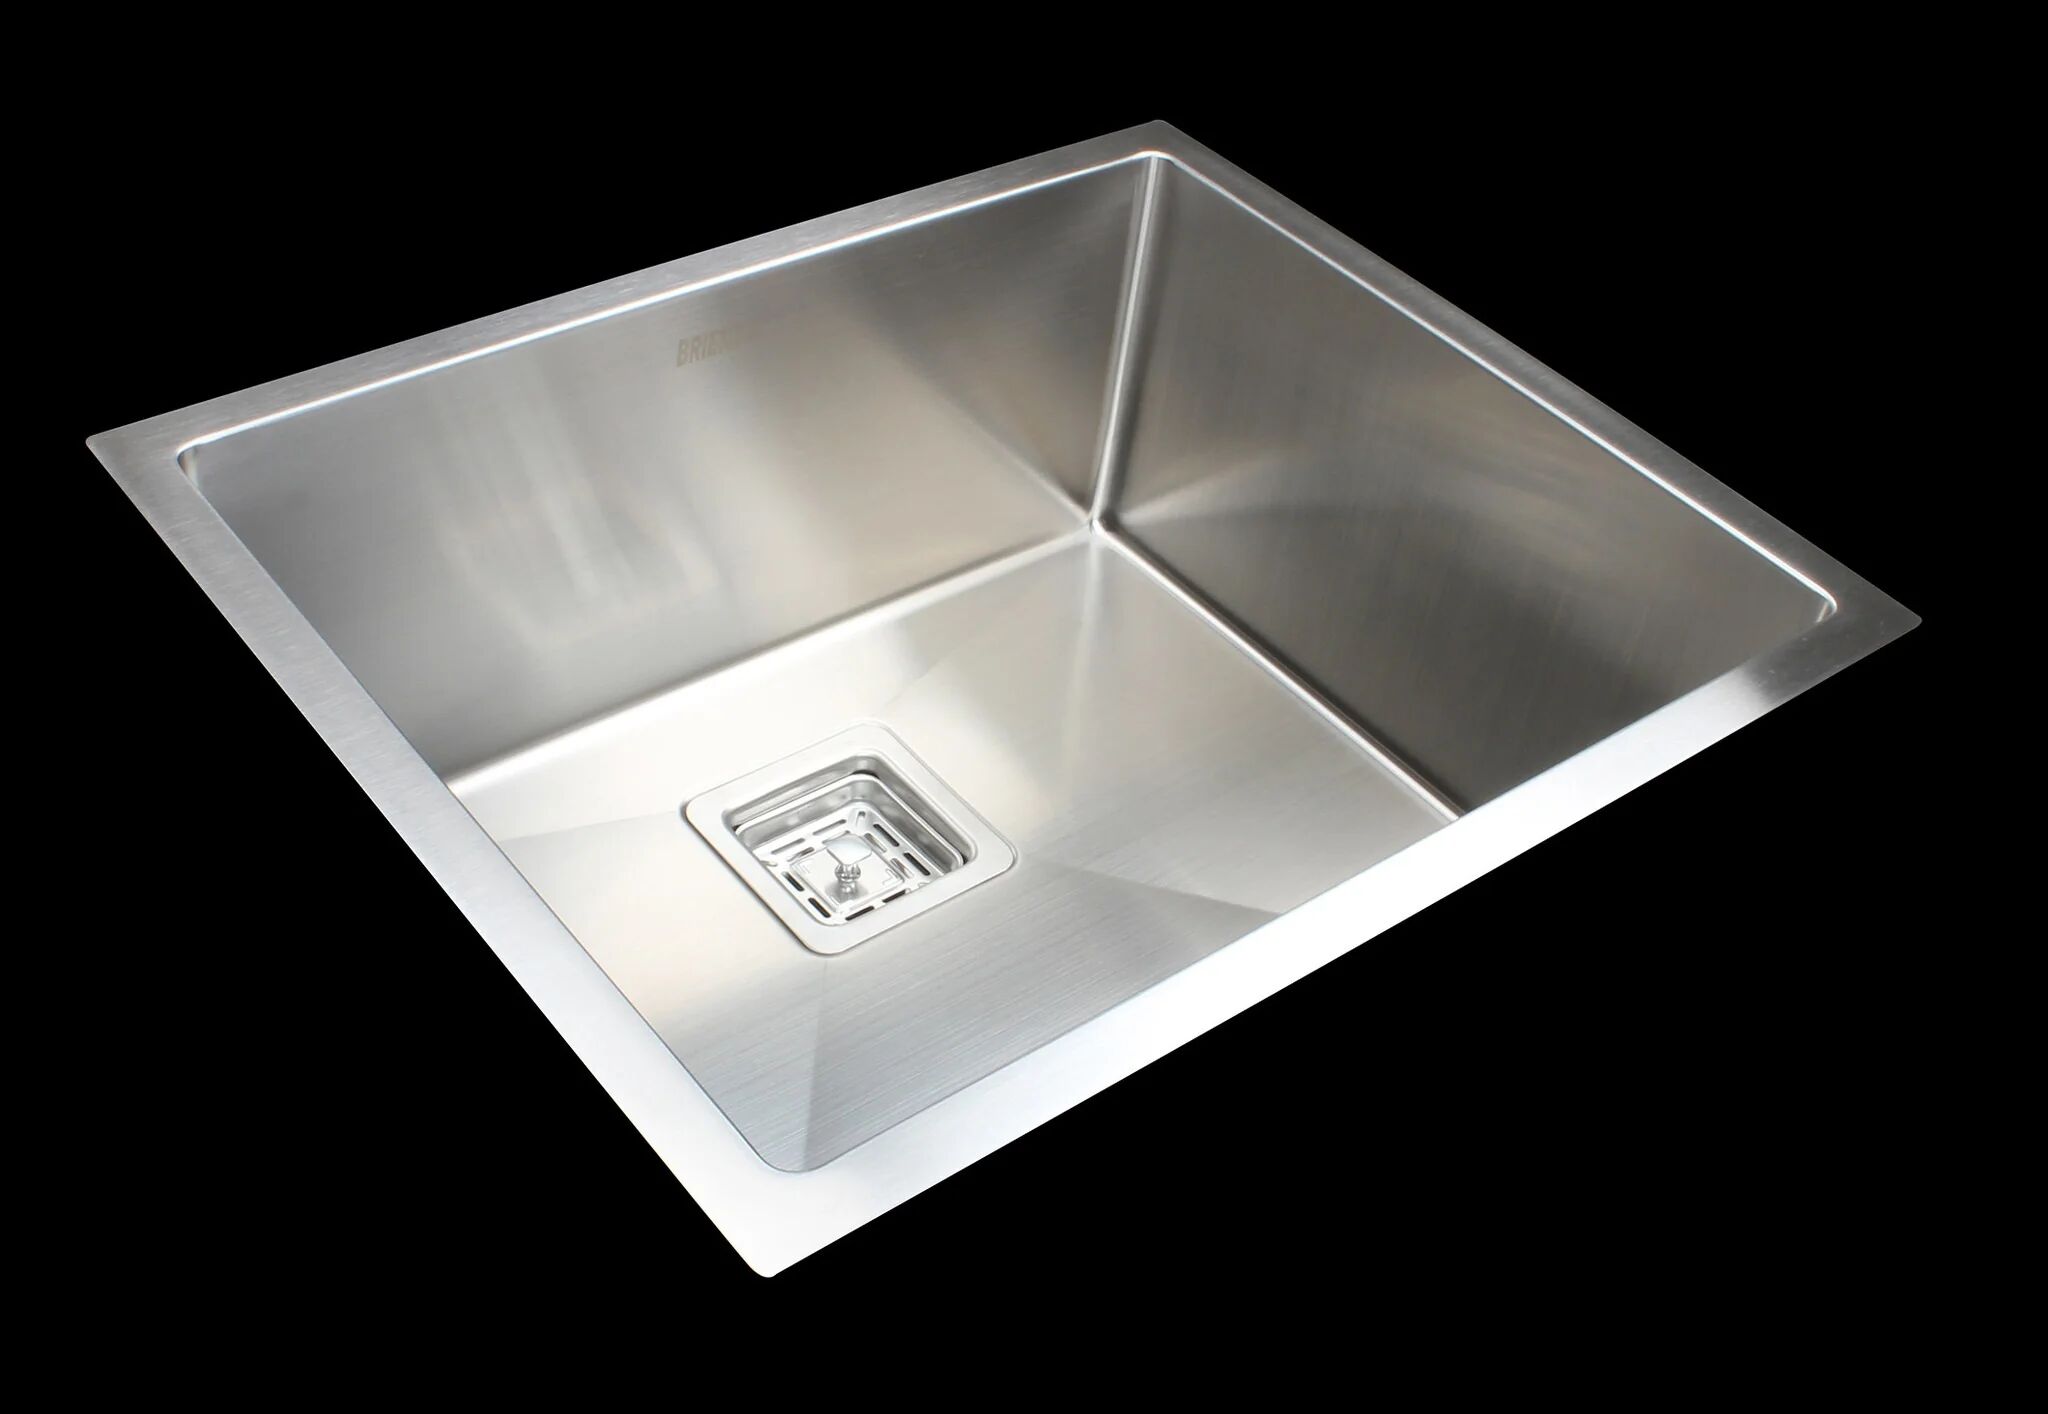 Unbranded Handmade Stainless Steel Undermount / Topmount Kitchen Sink w/ Waste